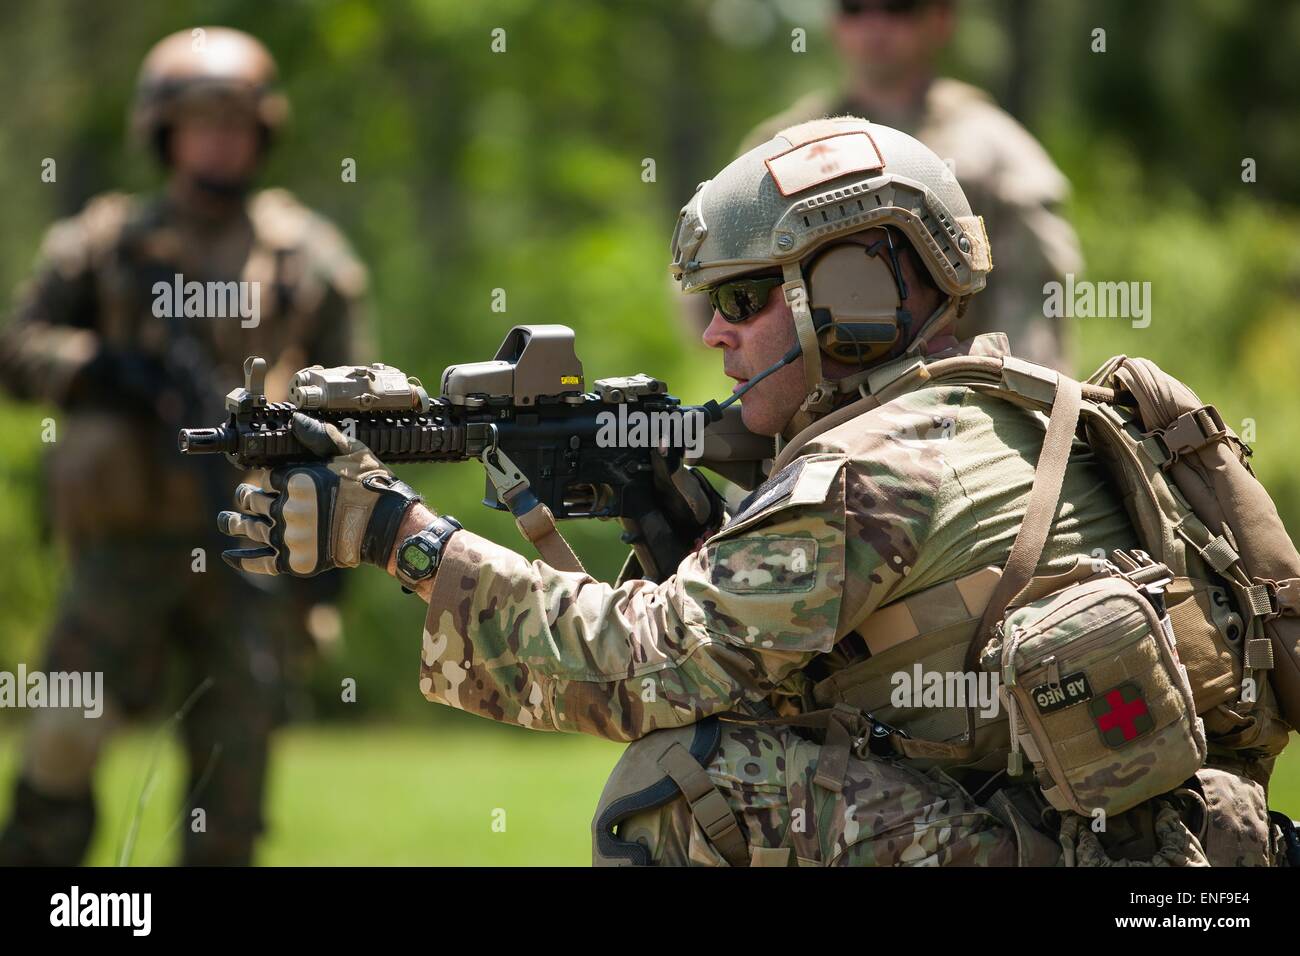 Soldat des Forces spéciales US avec la Garde nationale de l'Armée de démontrer les techniques opérationnelles pour le Chili à l'opération spéciale de commandos Camp Shelby Joint Forces Training Center 23 avril 2015 à Hattiesburg, Mississippi. Banque D'Images